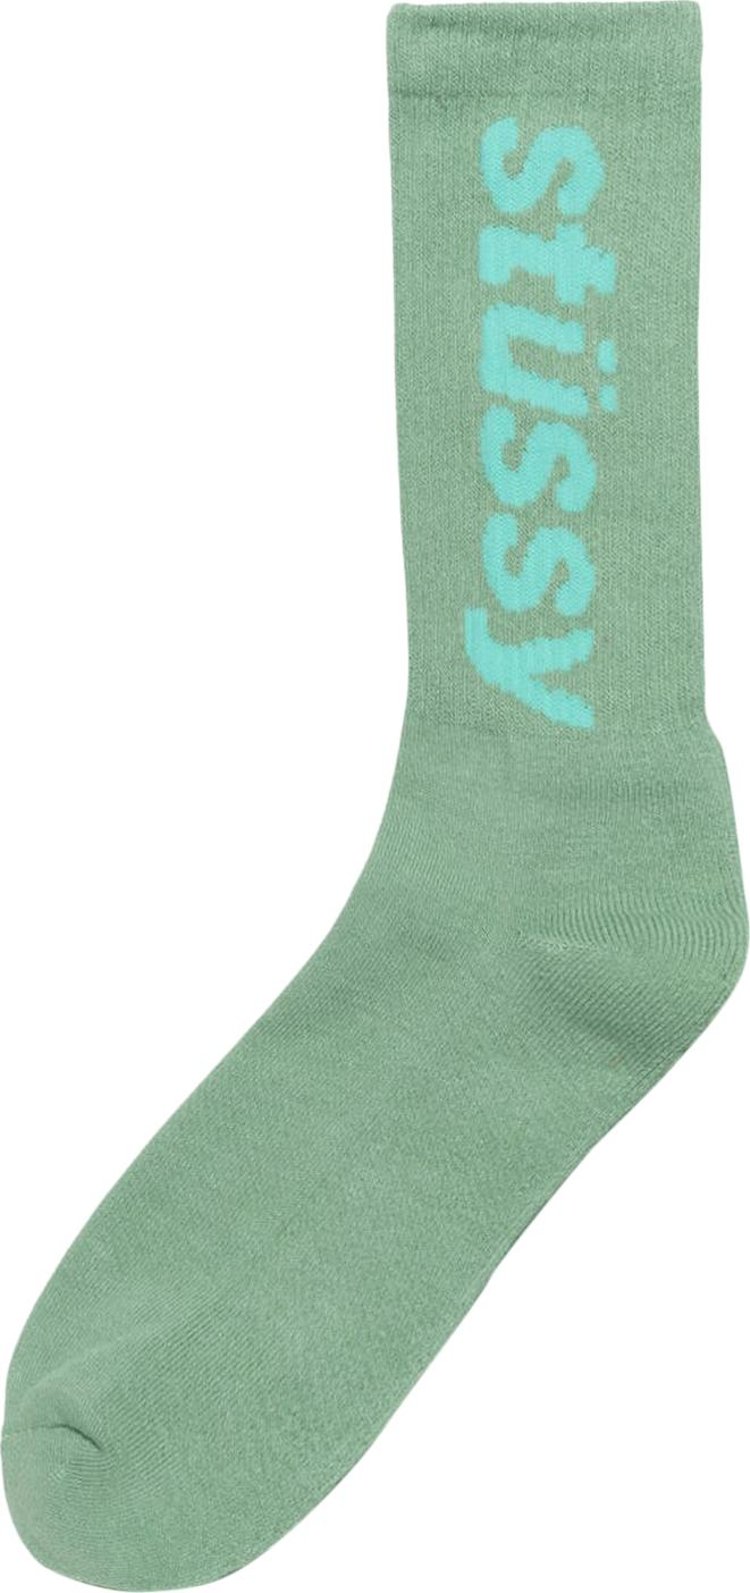 Stussy Helvetica Crew Socks 'Pistachio/Aqua'